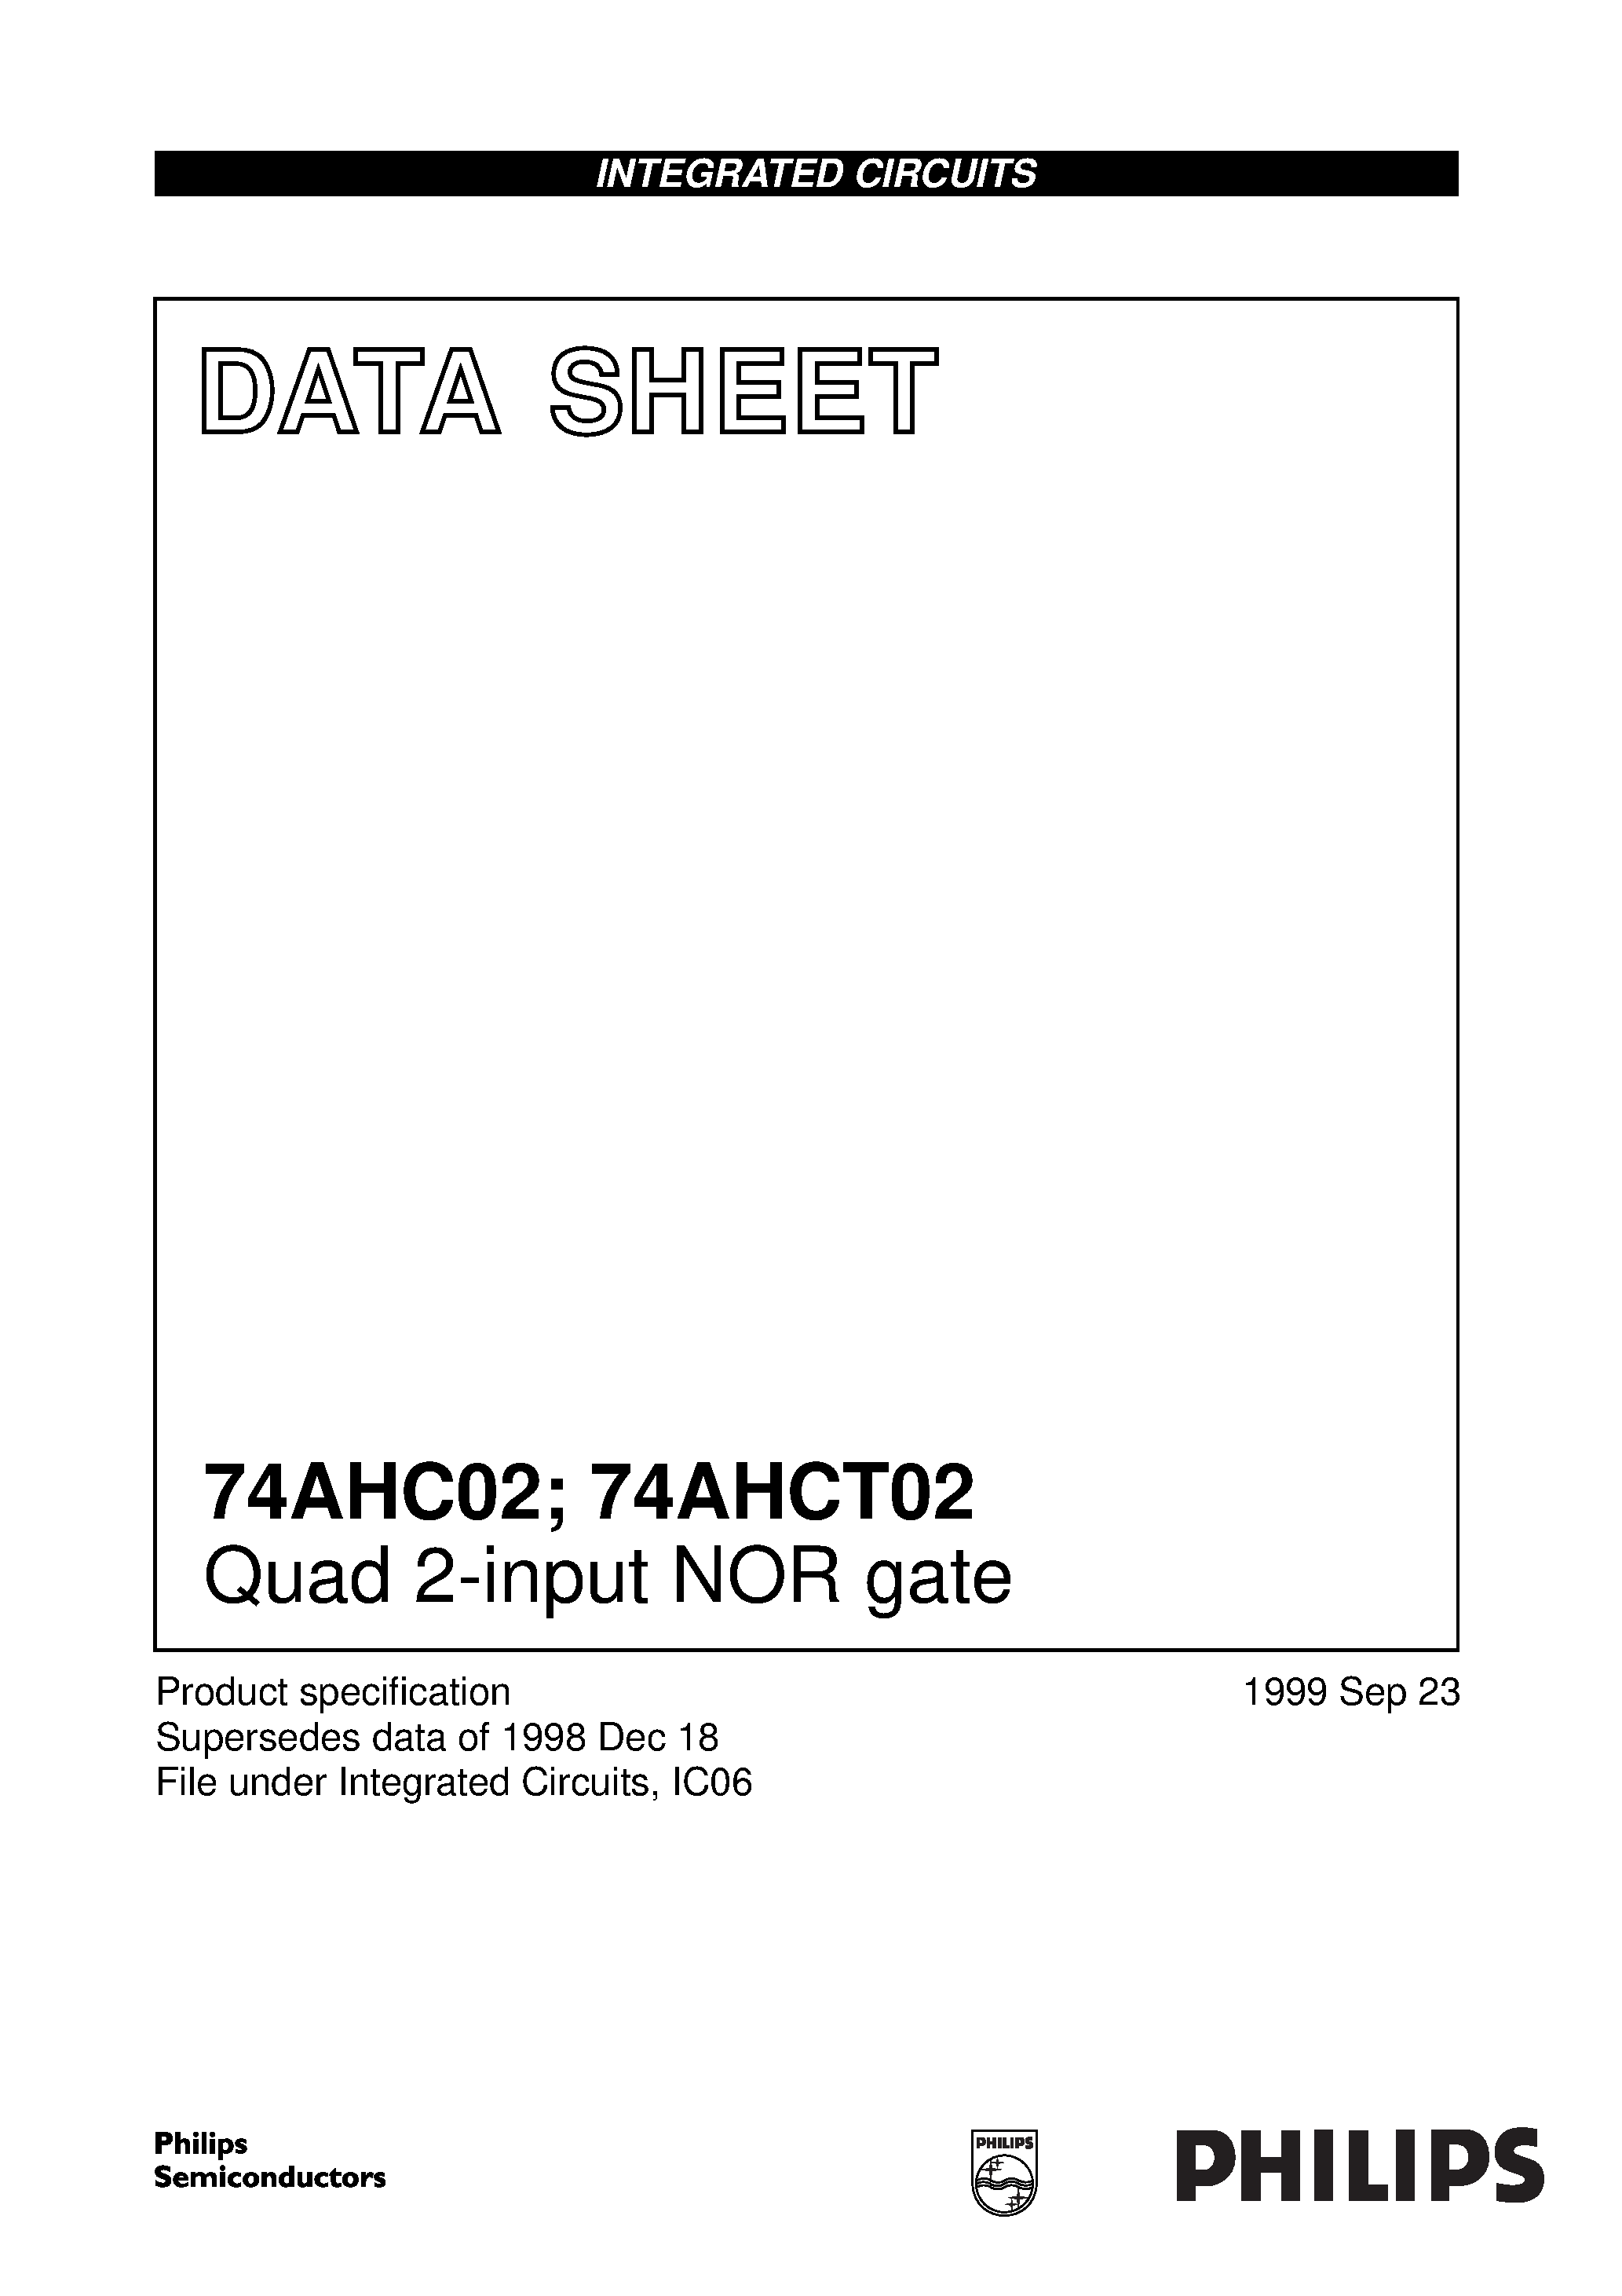 Даташит 74AHC02PWDH - Quad 2-input NOR gate страница 1